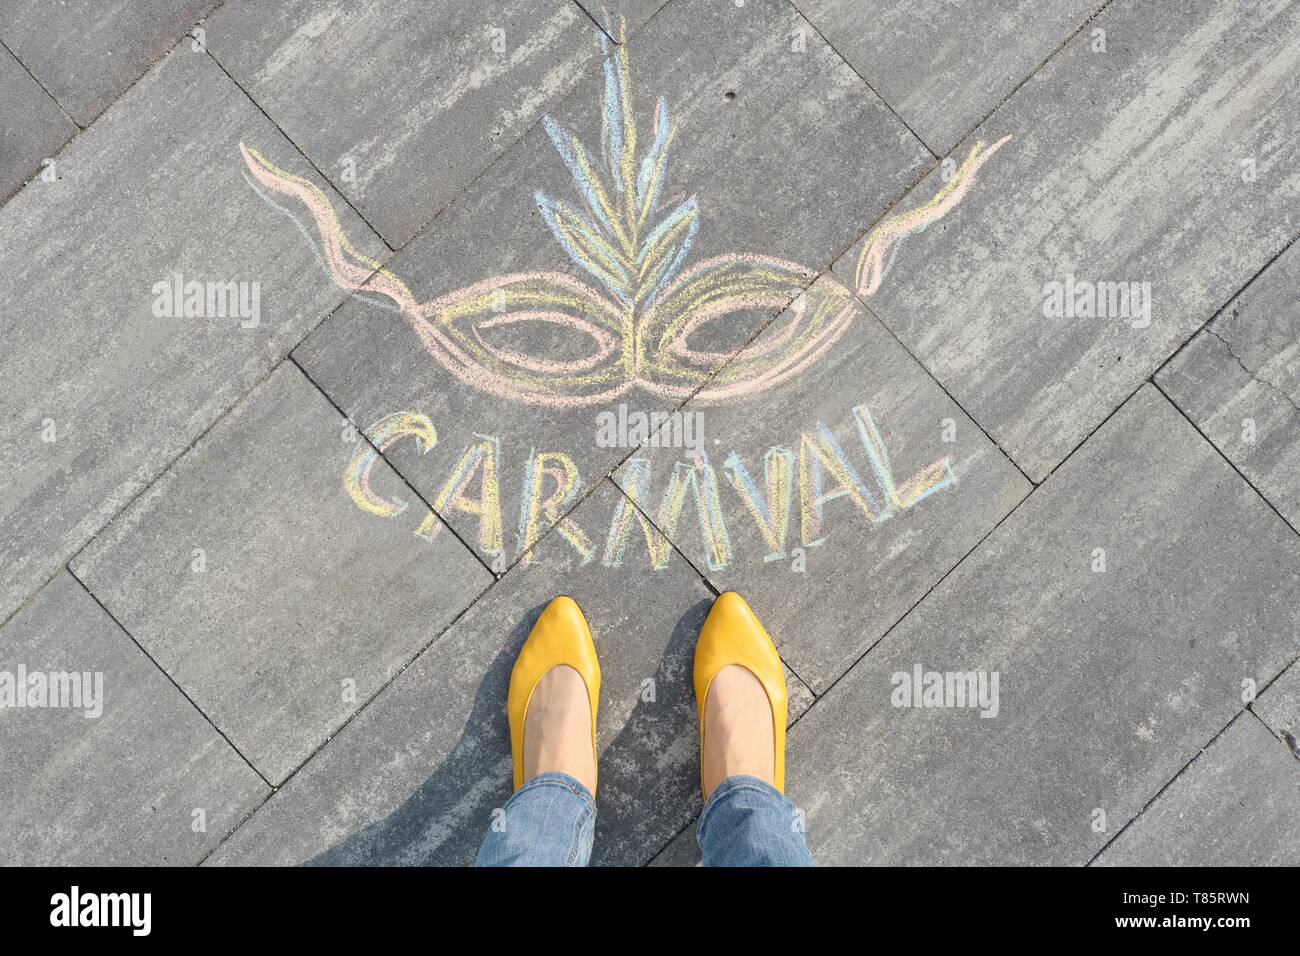 Carnival written on gris trottoir avec les jambes des femmes dans les chaussures jaunes, vue du dessus Banque D'Images